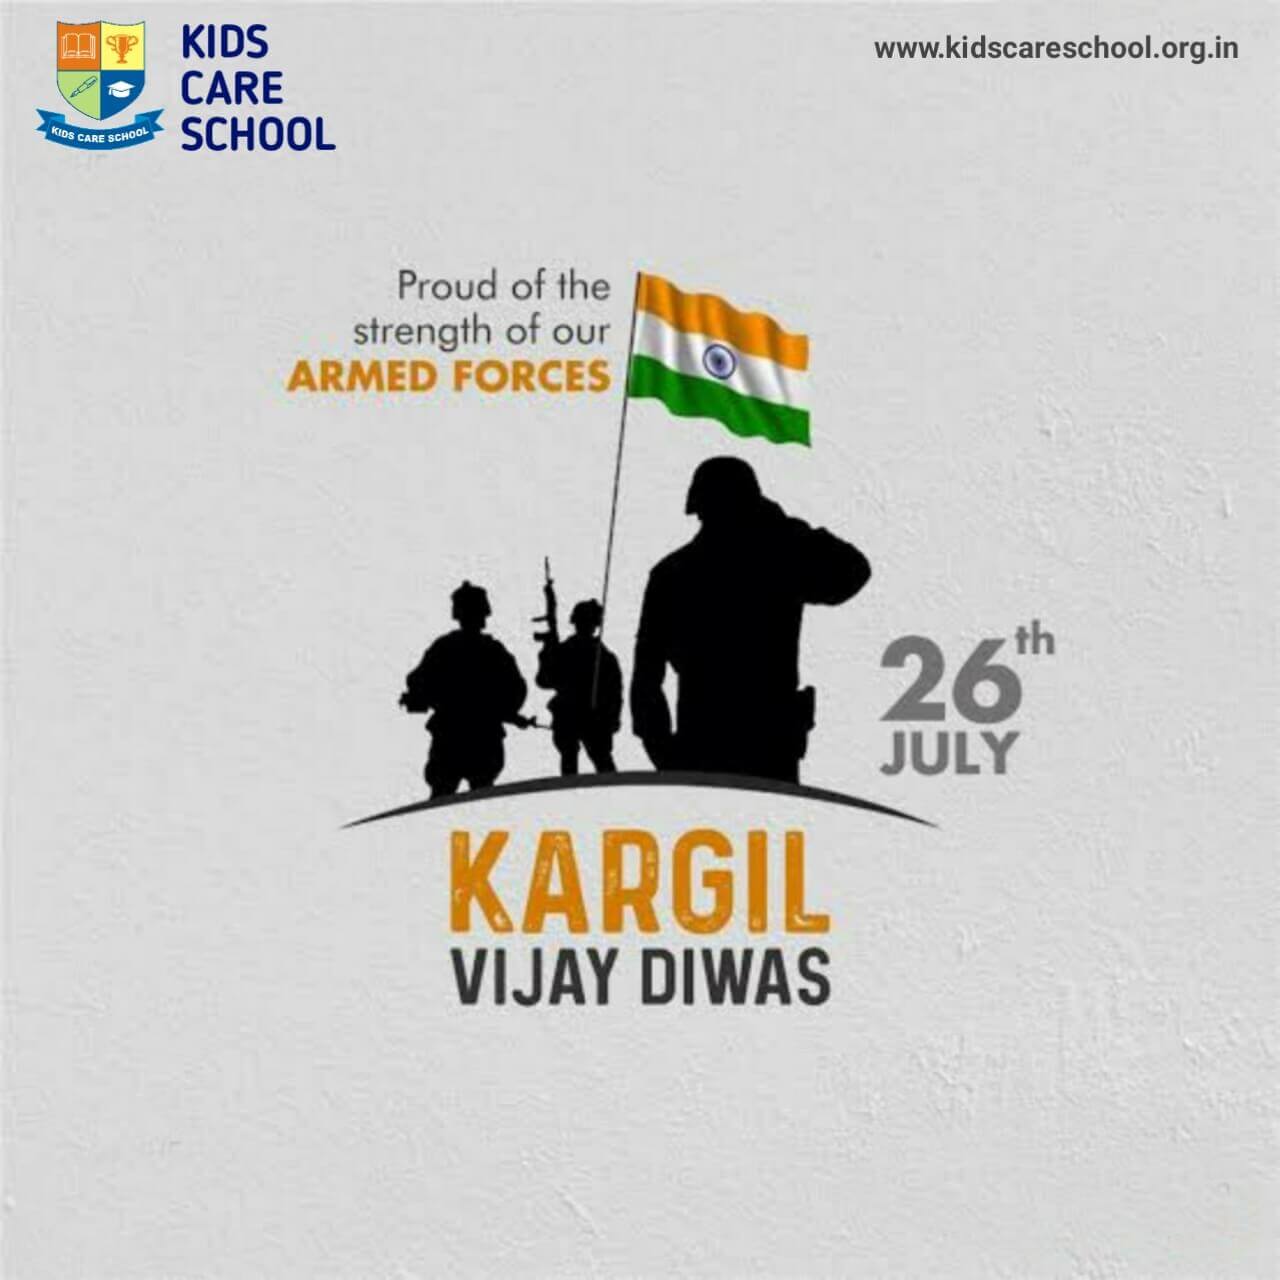 Notice for Celebration of Kargil Vijay Diwas